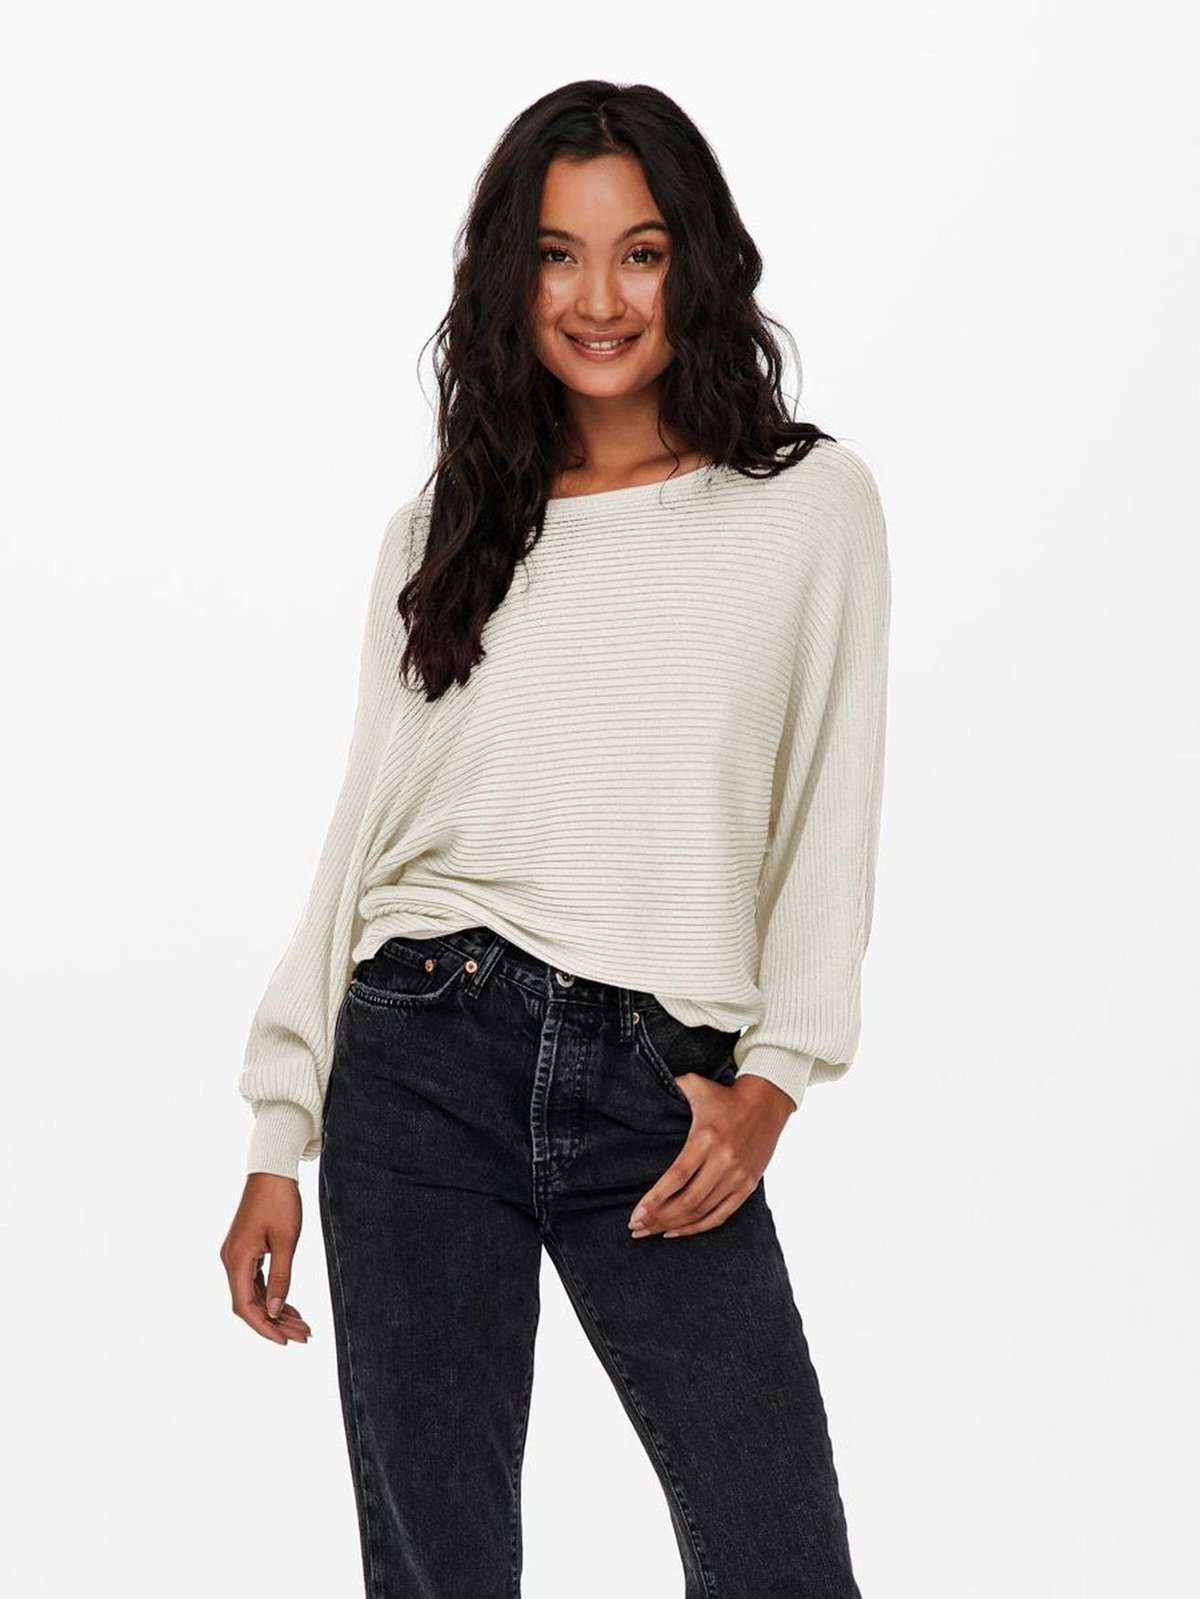 Вязаный свитер короткий вязаный свитер стрейч, свитер с длинными рукавами ONLADALINE (1 шт.) 4217 белого цвета